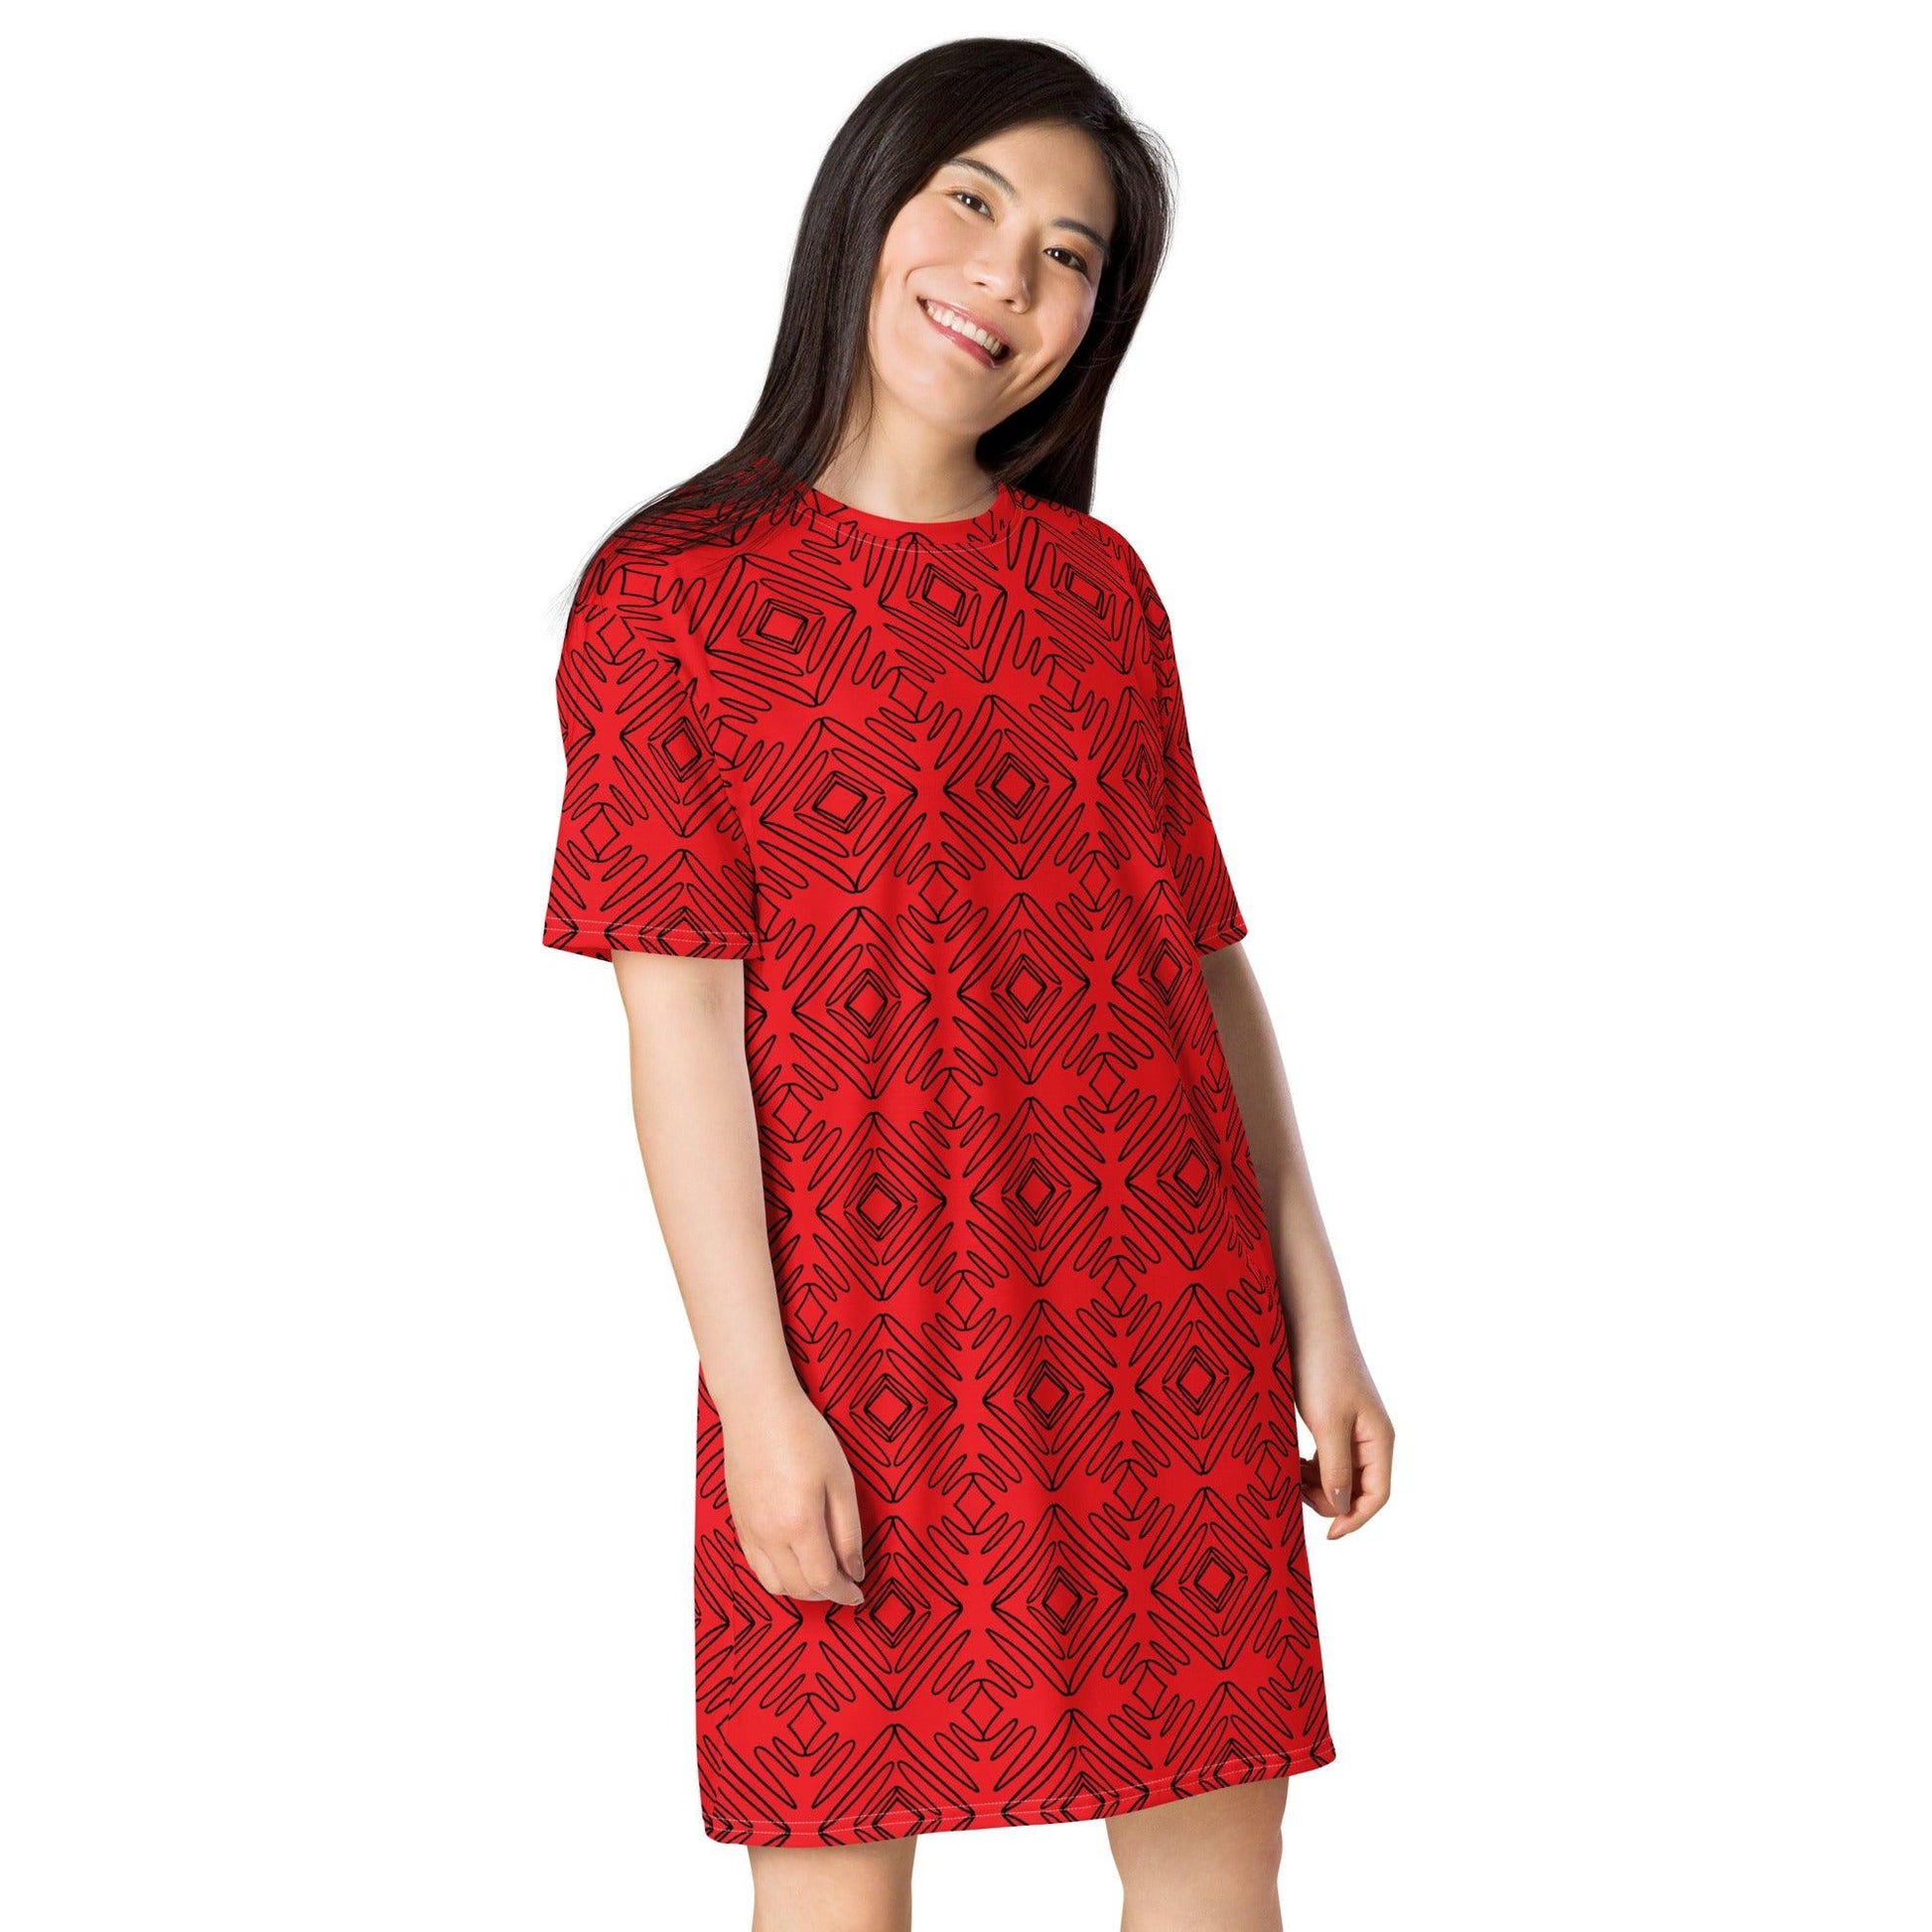 Red Diamond T-shirt dress - L & M Kee, LLC